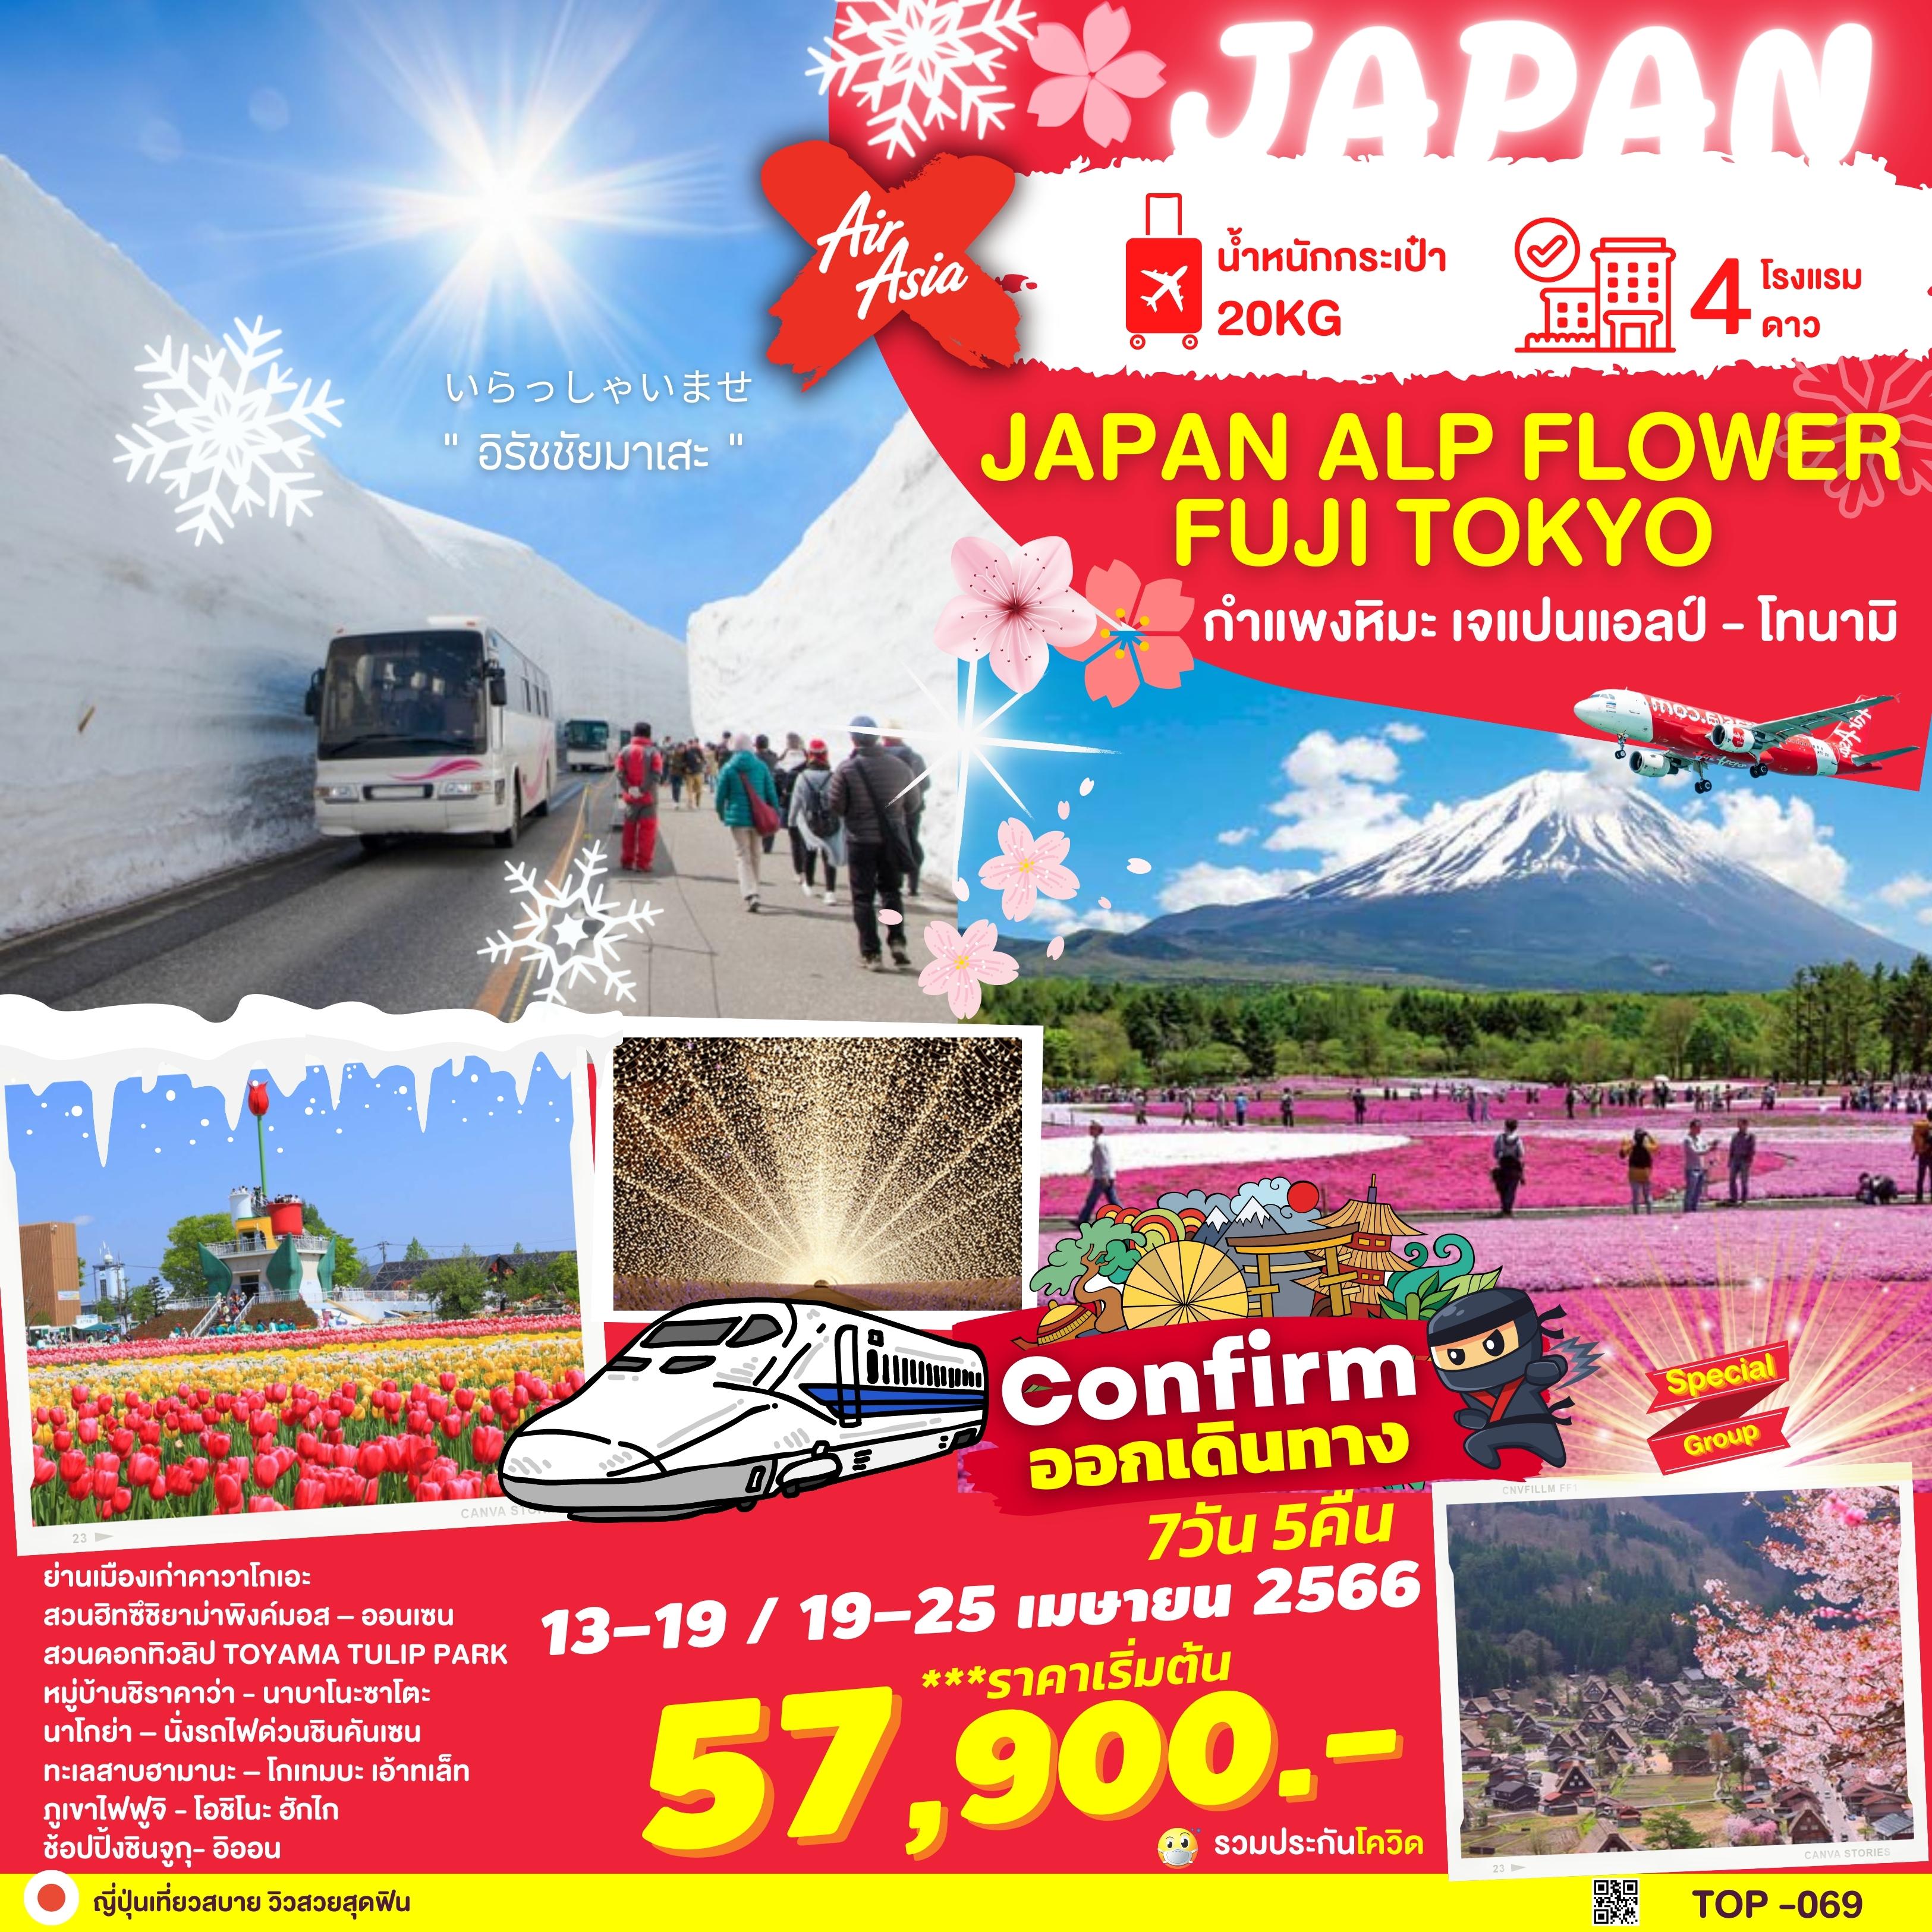 ทัวร์ญี่ปุ่น JAPAN ALPS FLOWER FUJI TOKYO 7D5N (XJ) เม.ย.66